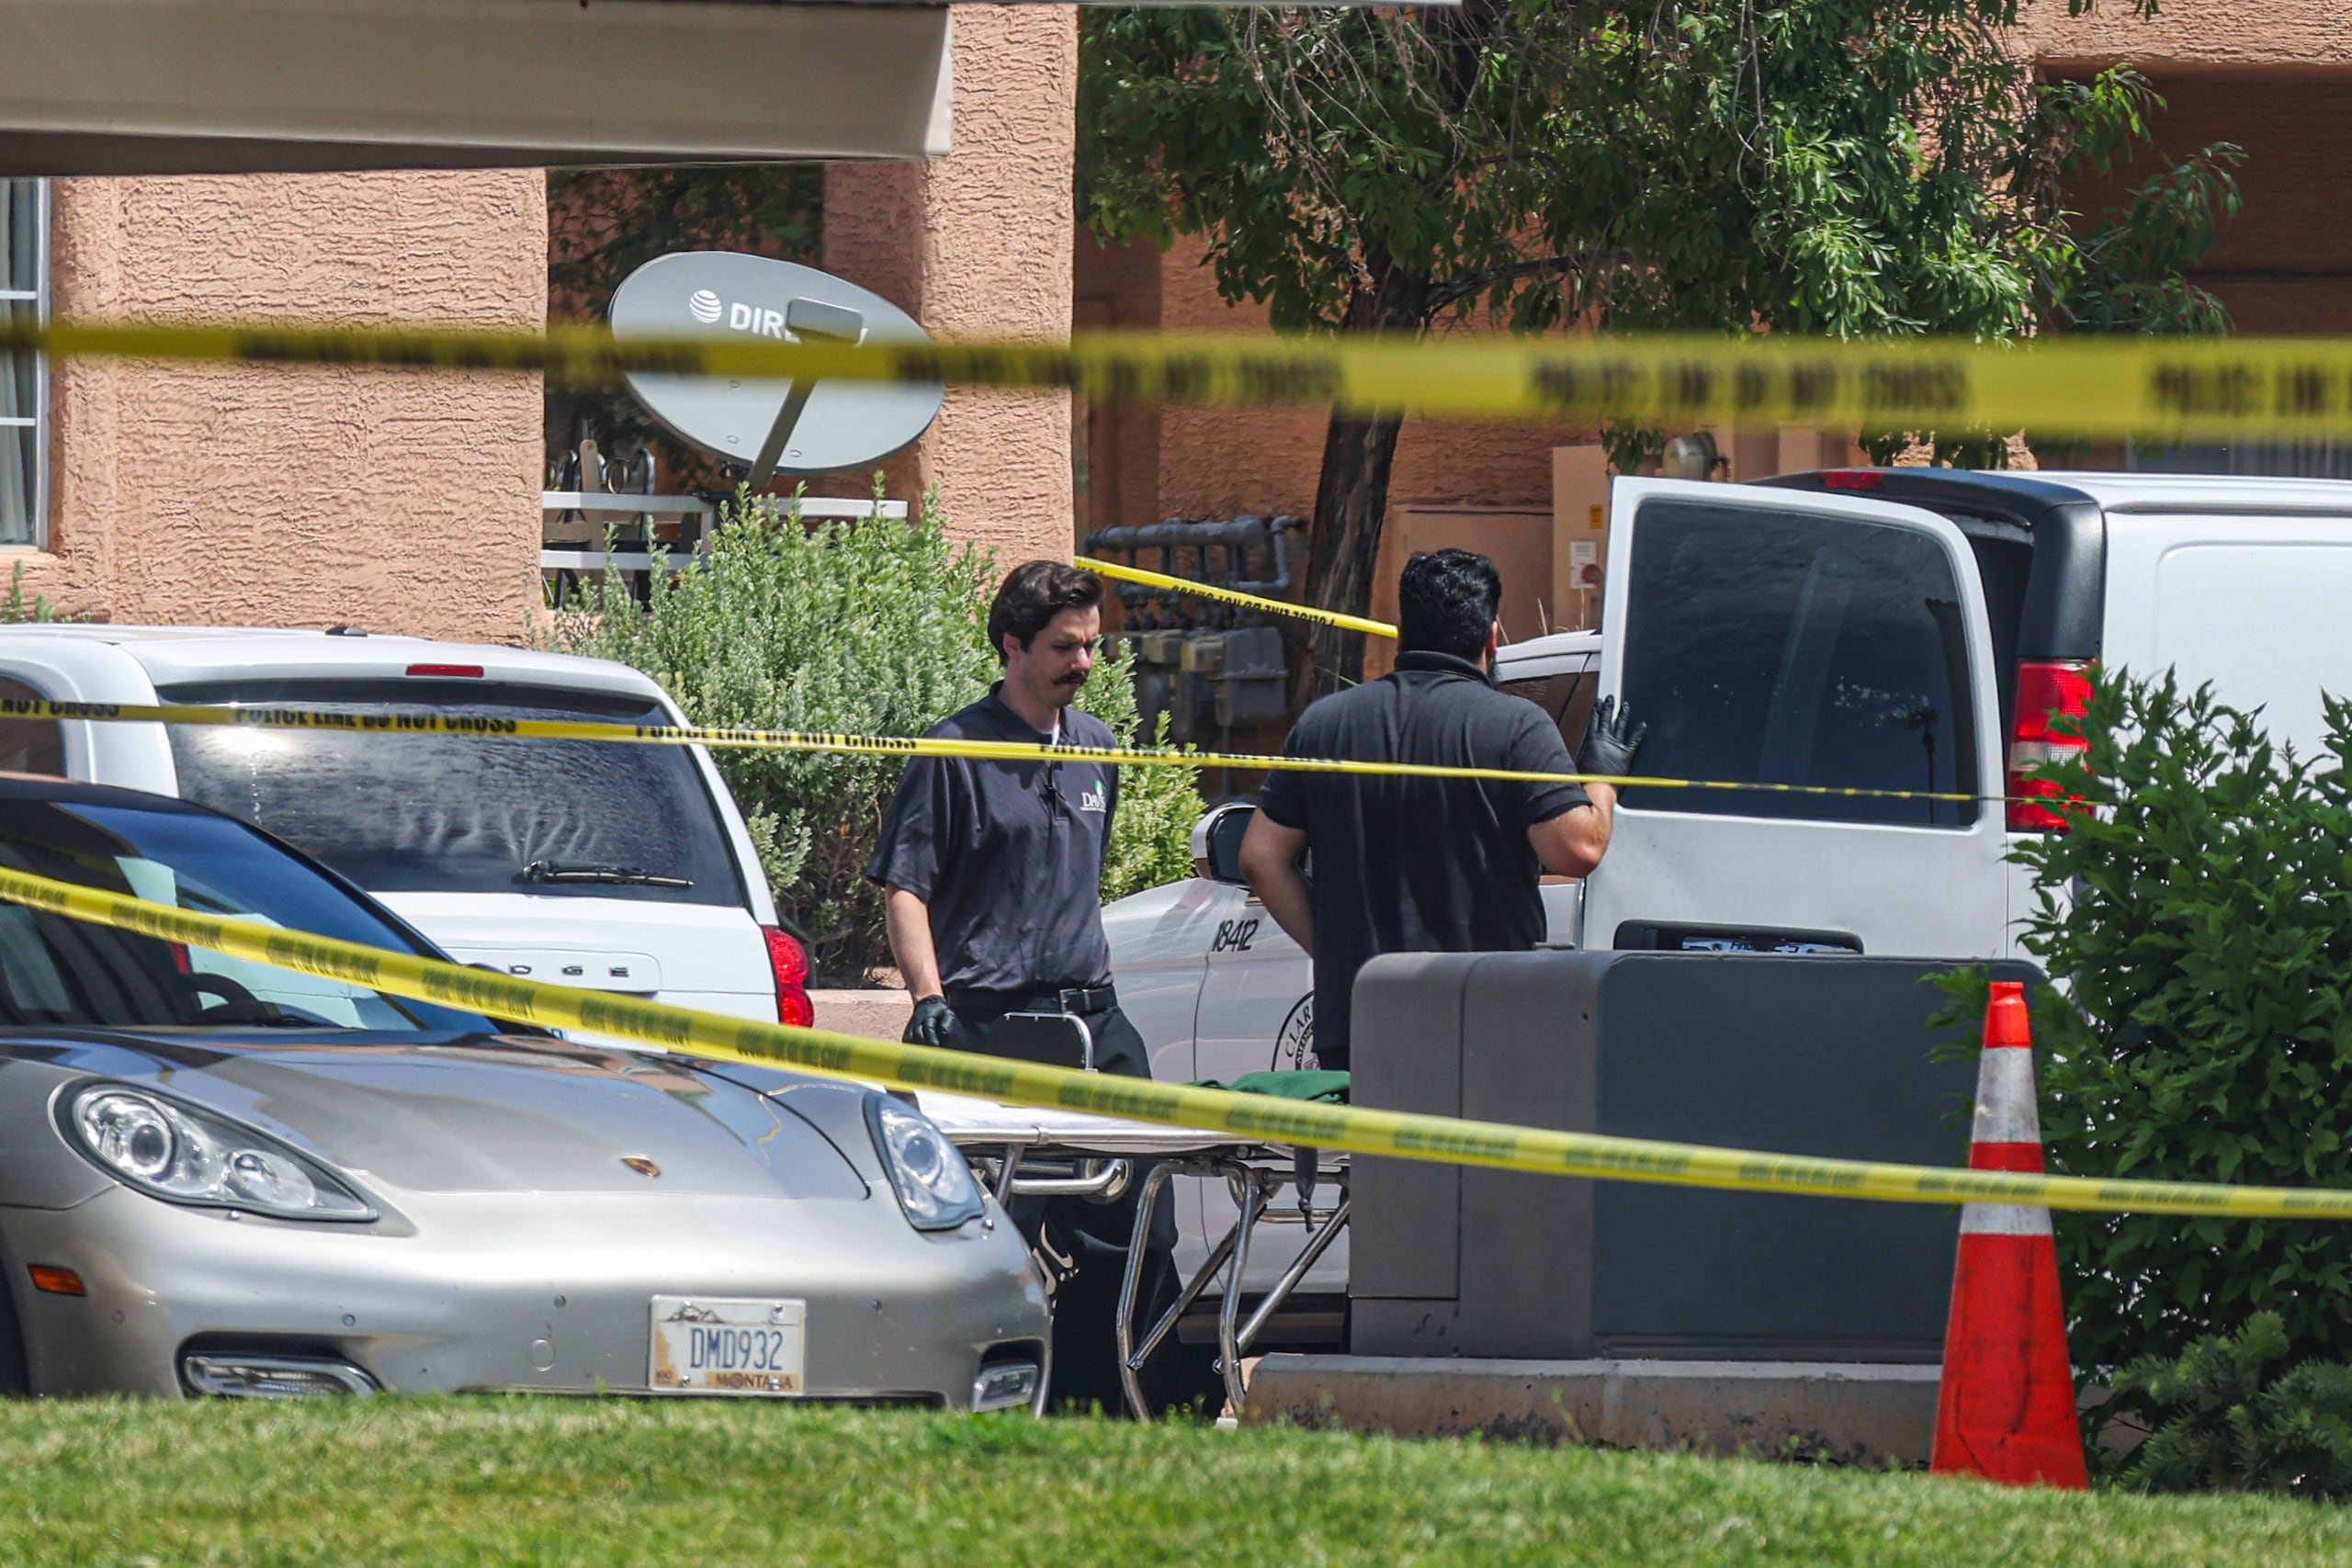 No han revelado el motivo del tiroteo (Rachel Aston/Las Vegas Review-Journal via AP)